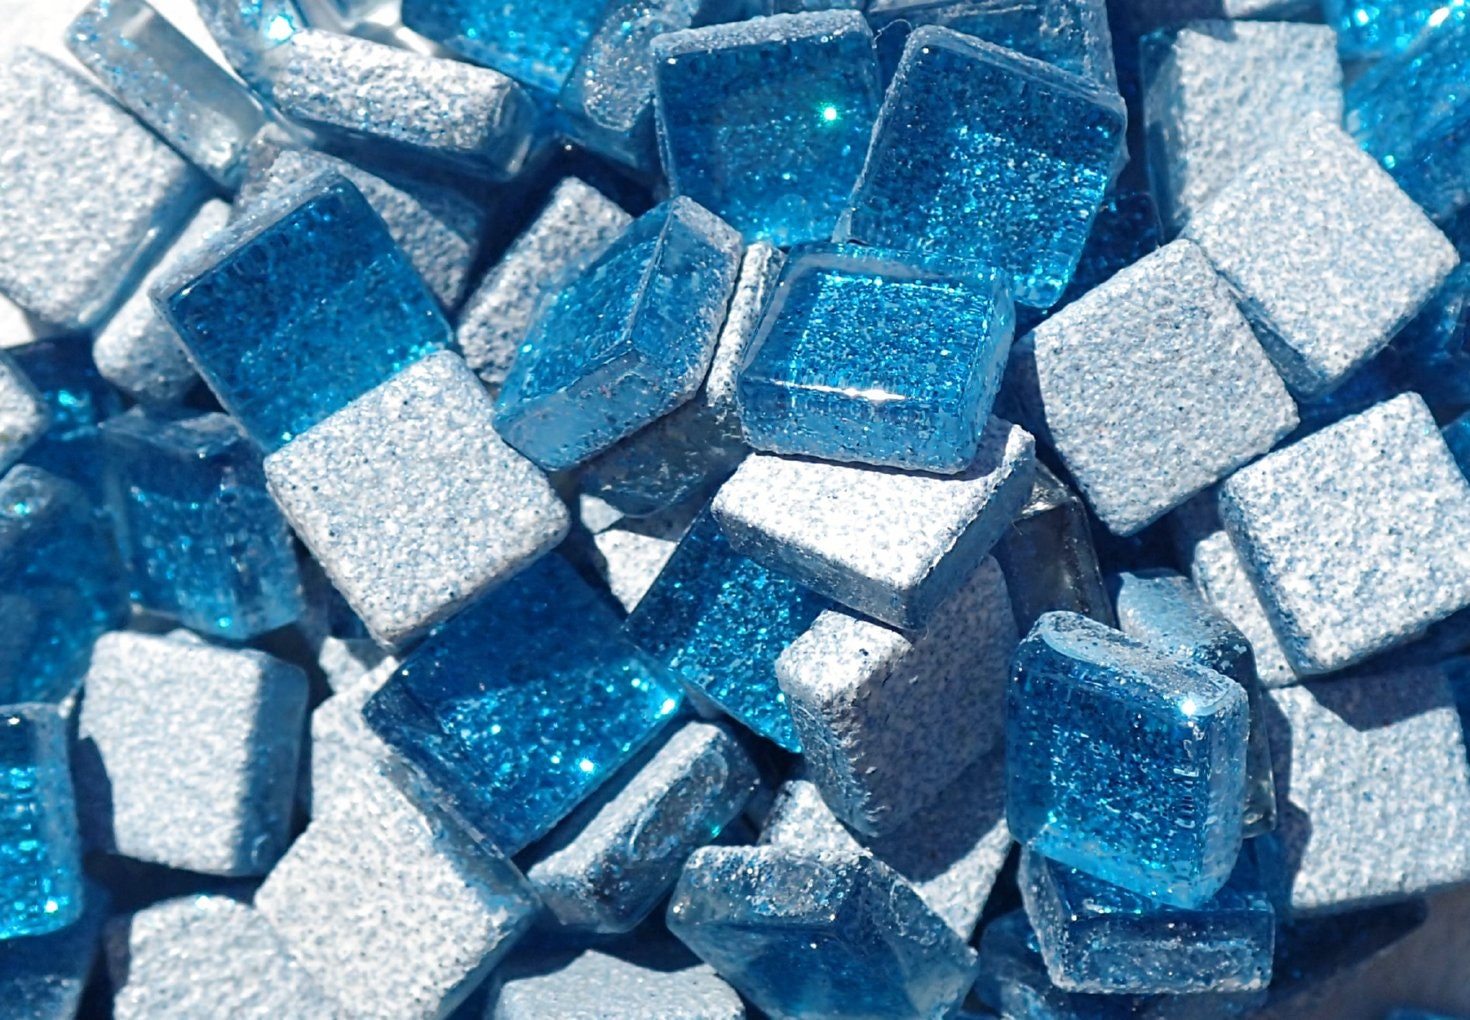 Sky Blue Glitter Tiles - 1 cm - 100g - Over 100 Metallic Small Glass Tiles